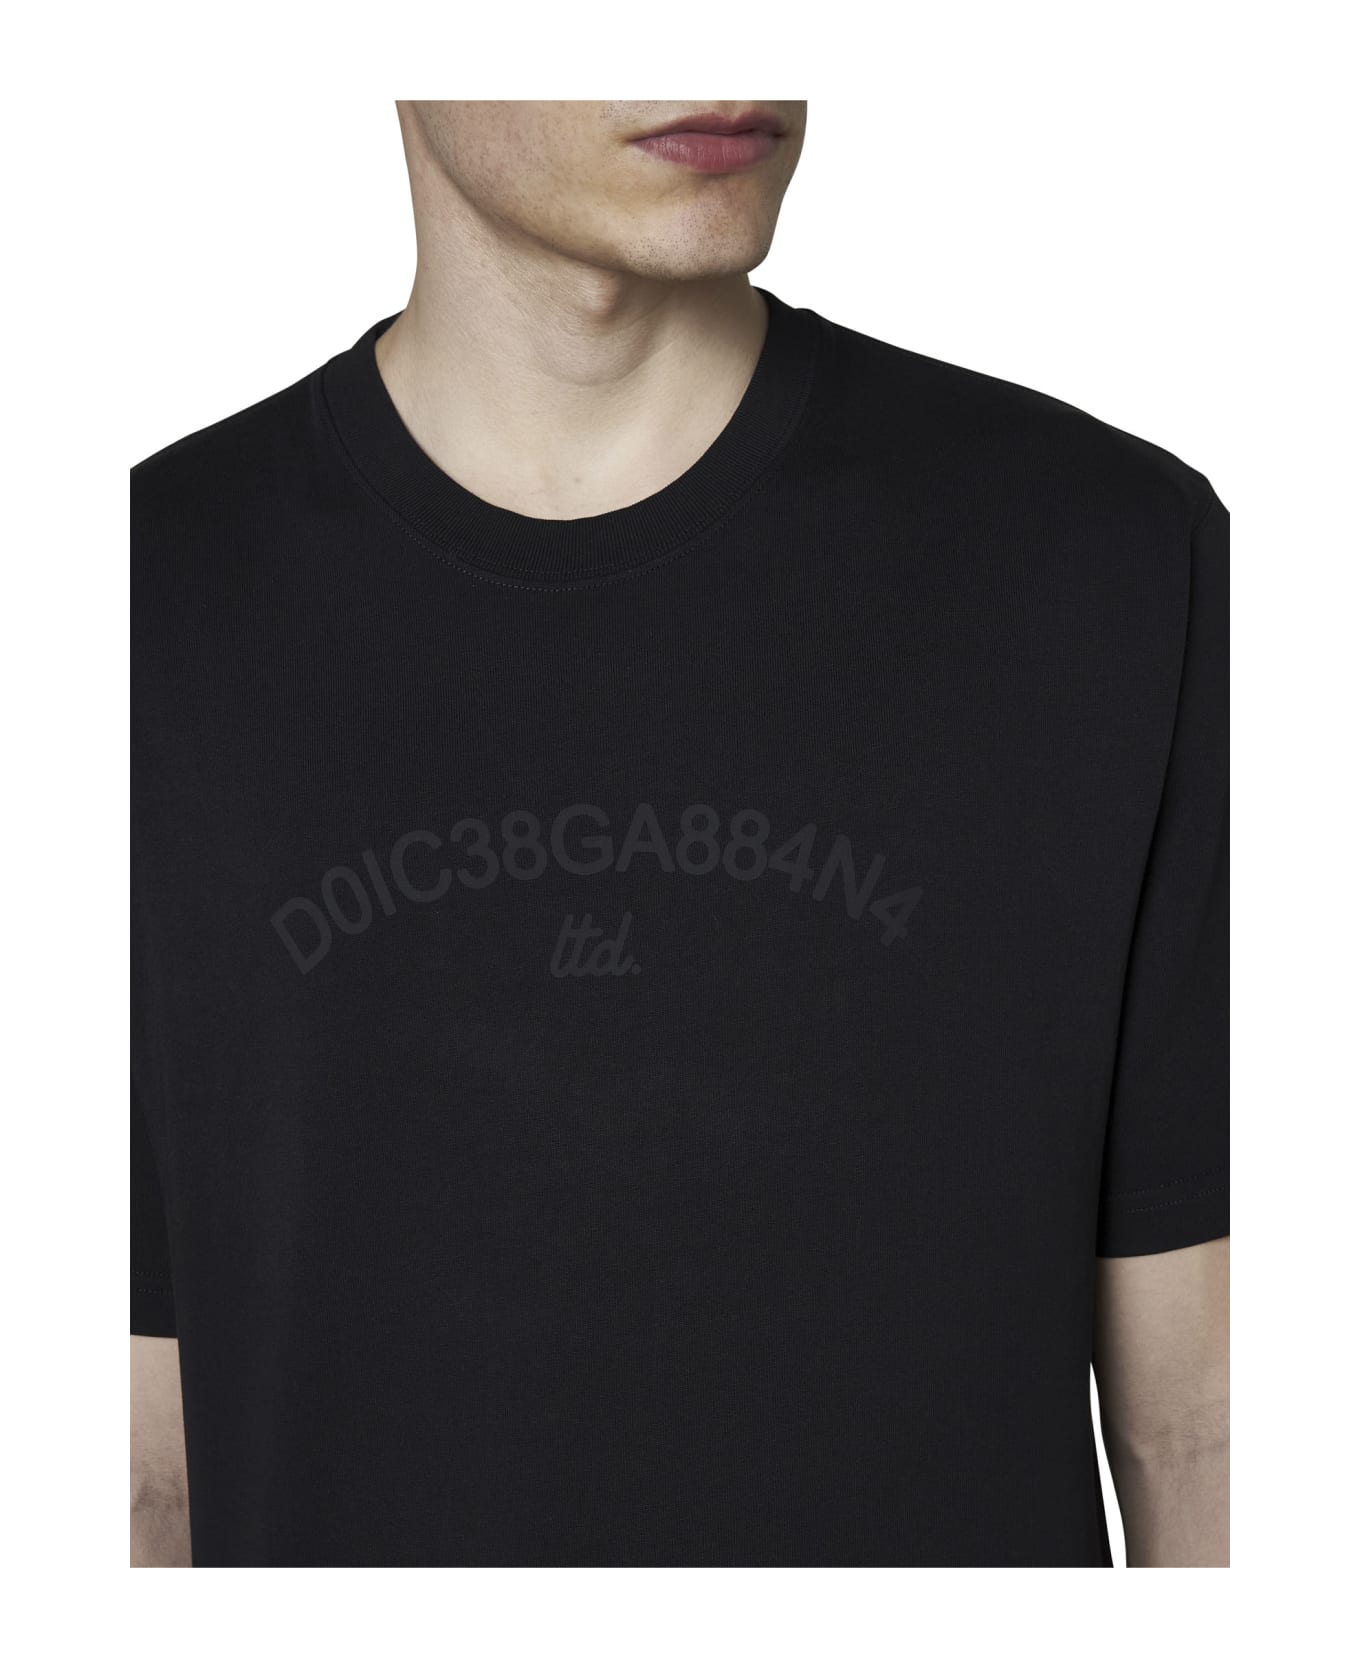 Dolce & Gabbana T-Shirt - Black